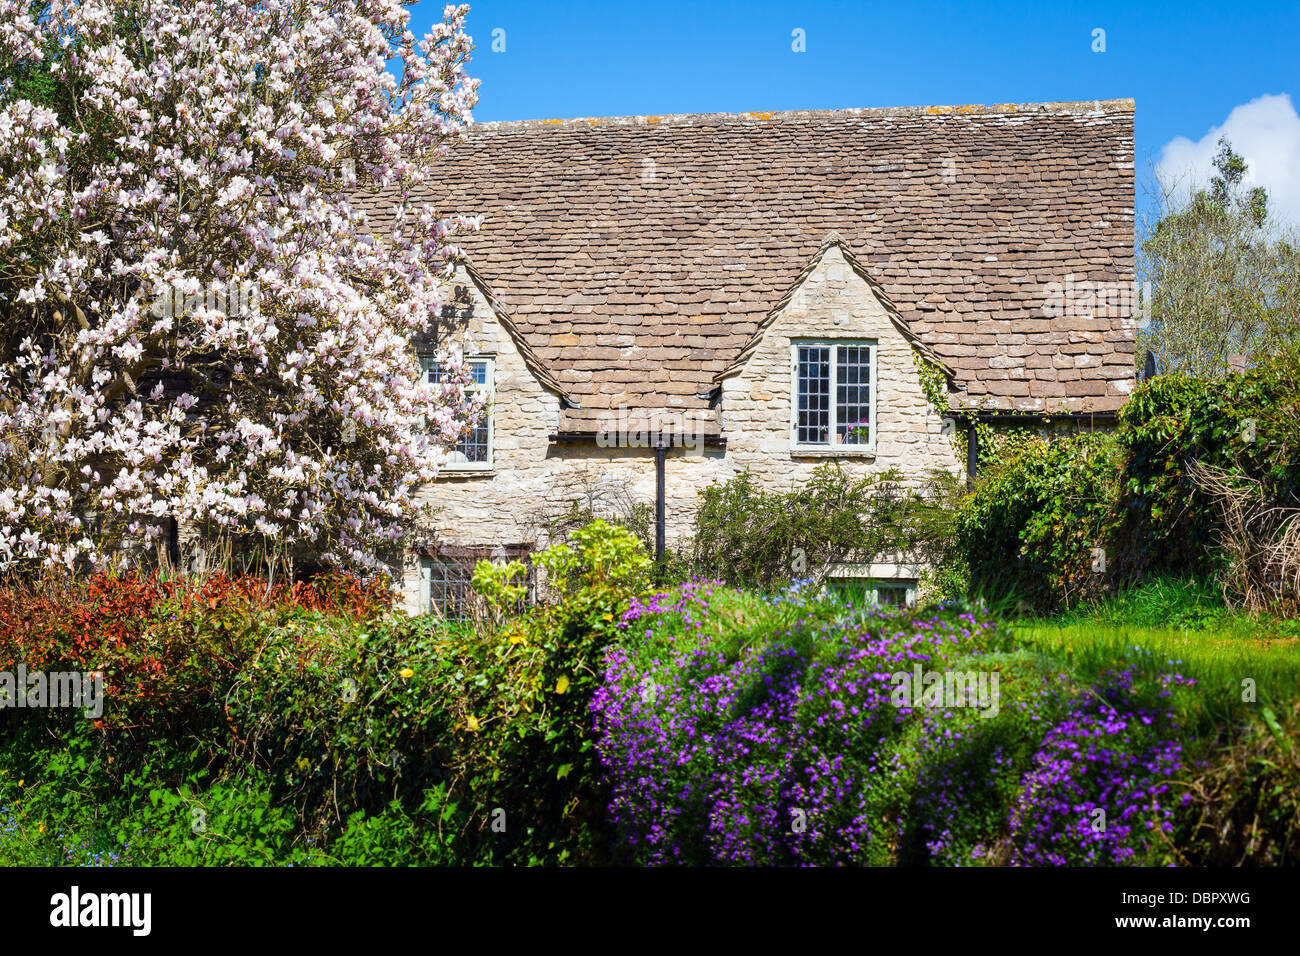 Maison en pierre entourée de fleurs dans un village anglais rural Banque D'Images